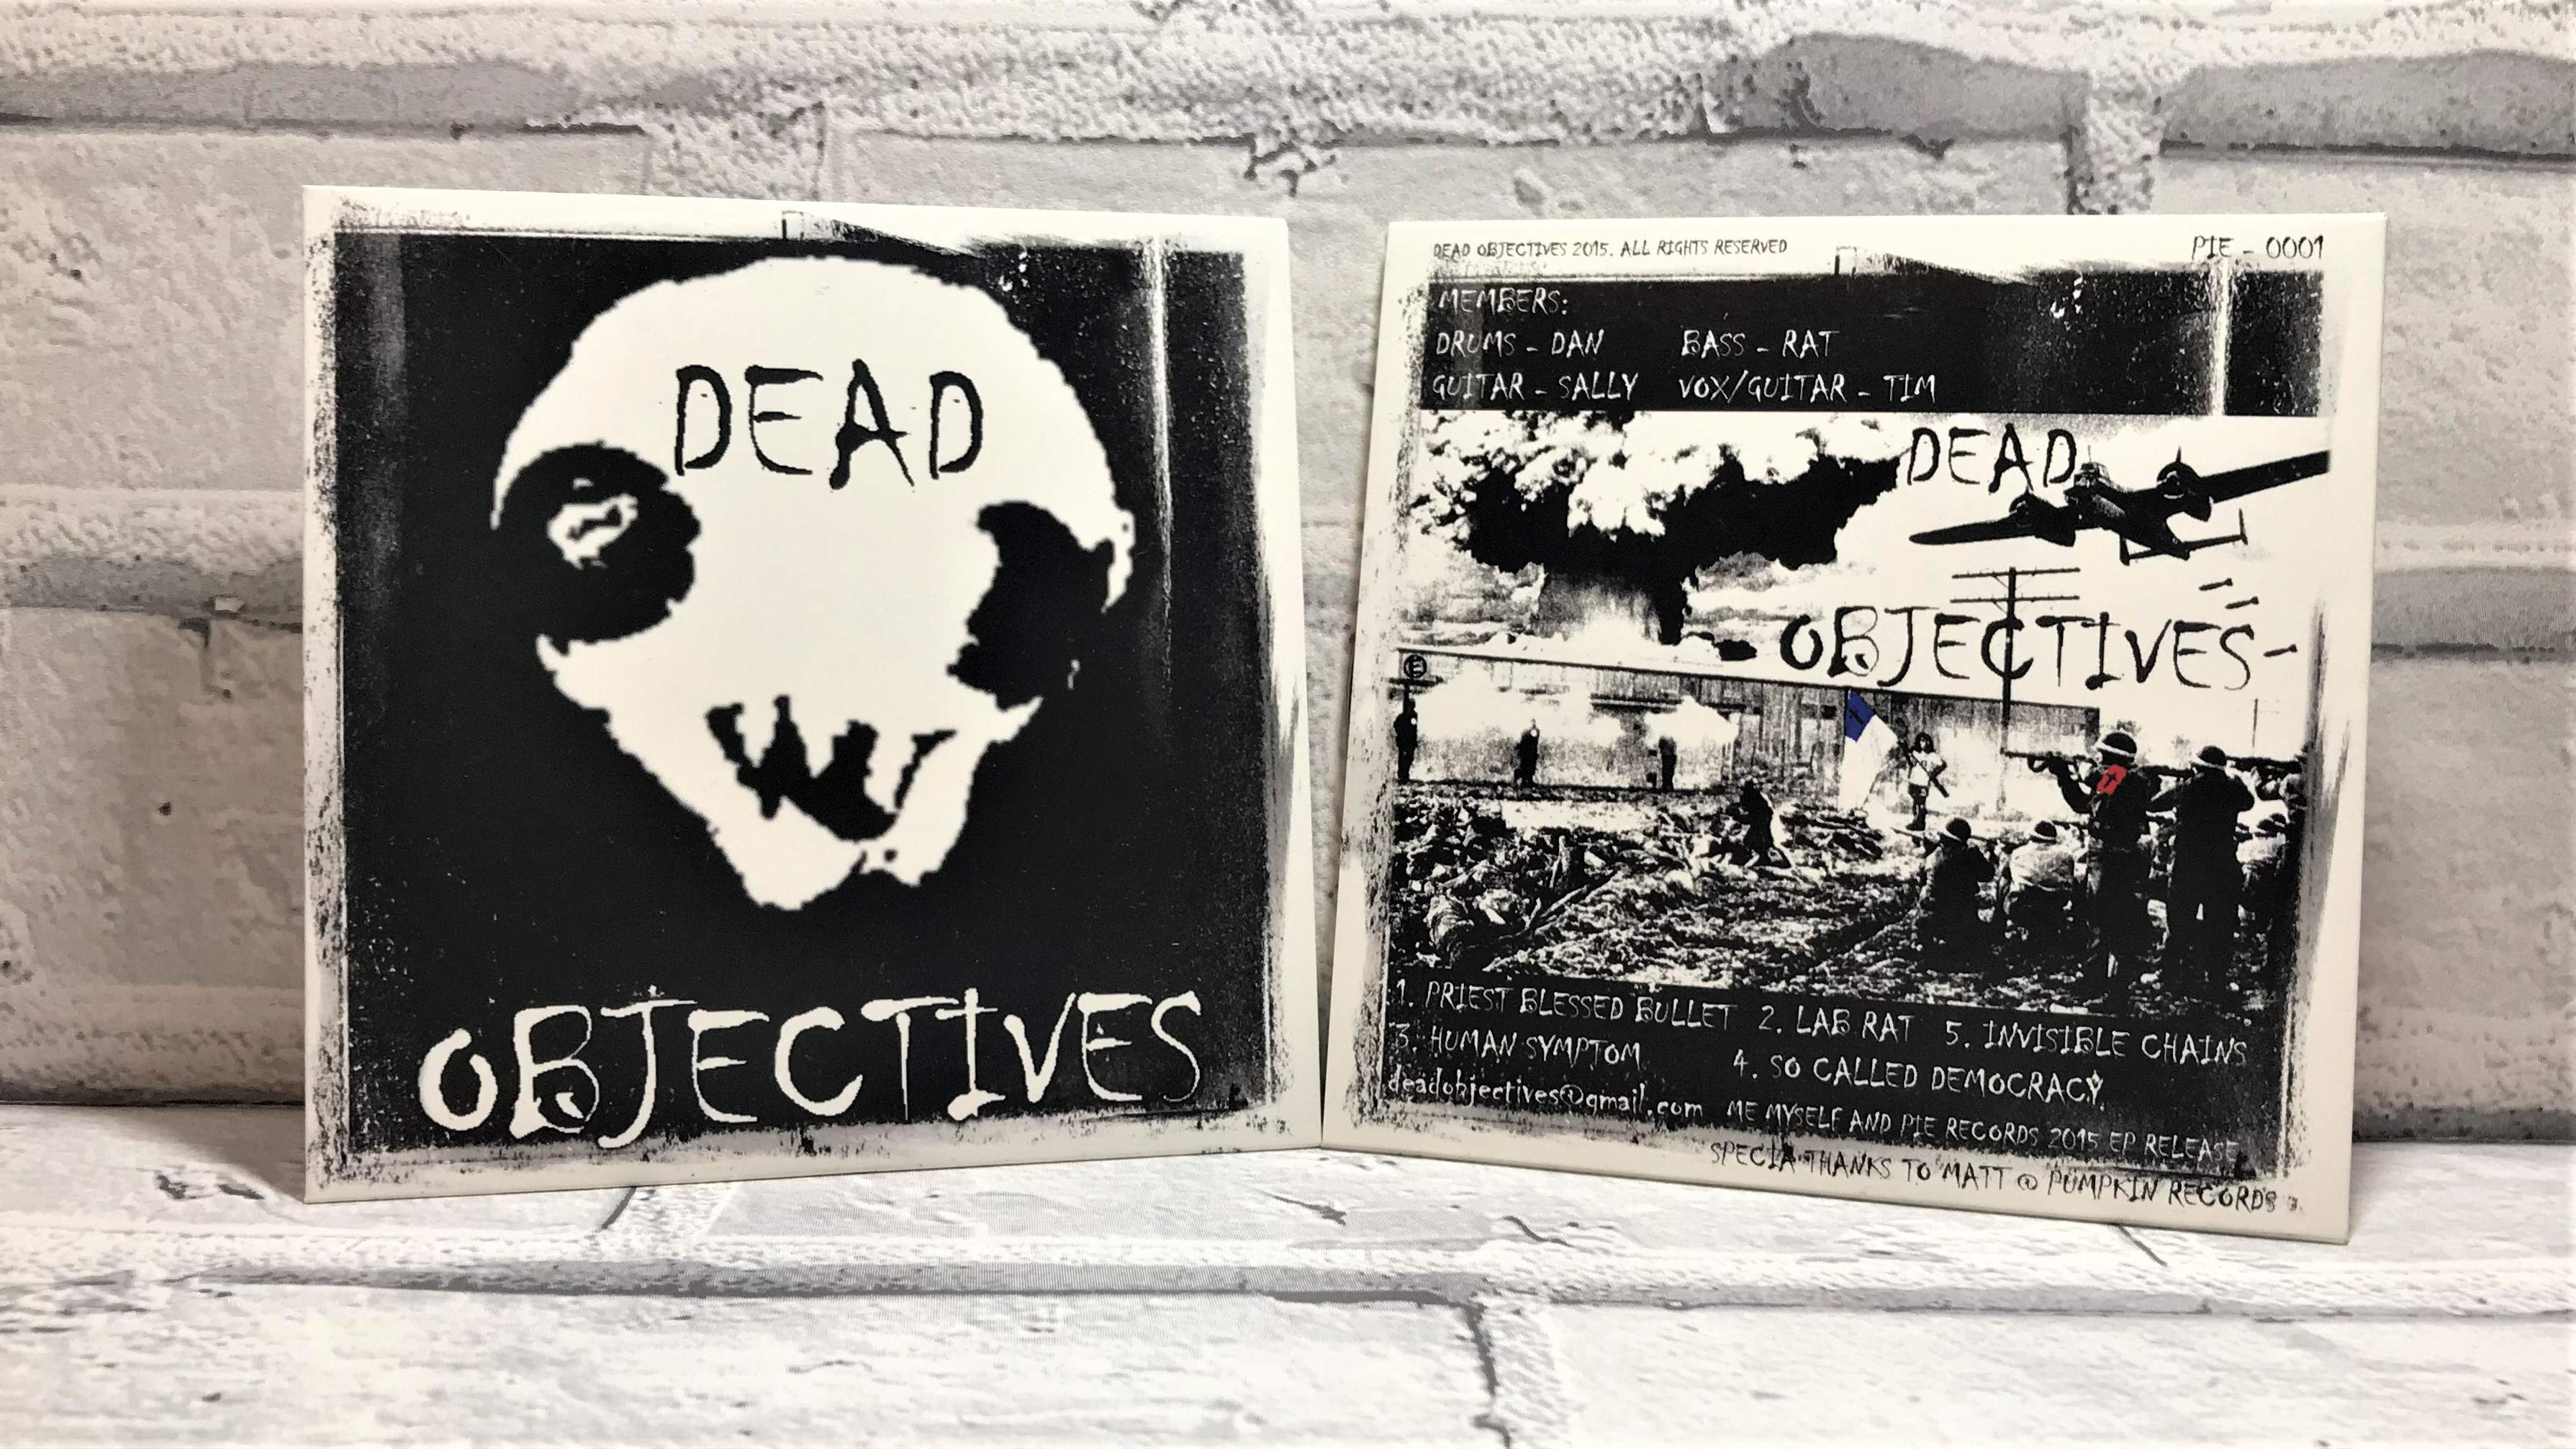 Dead Objectives CD EP